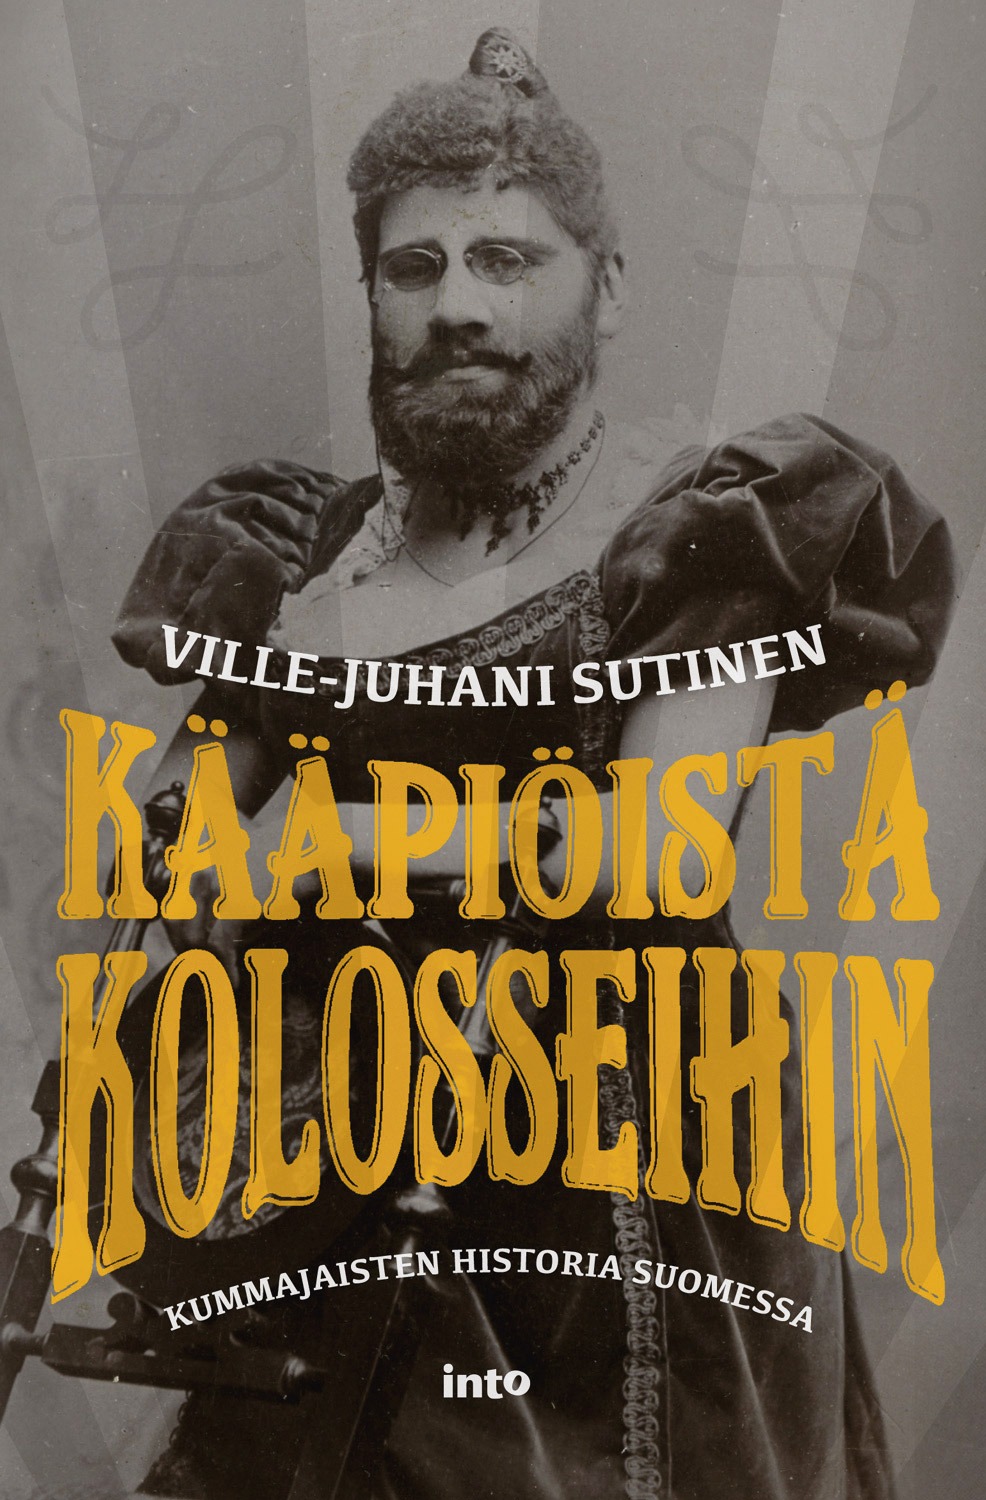 Sutinen, Ville-Juhani - Kääpiöistä kolosseihin: Kummajaisten historia Suomessa, ebook